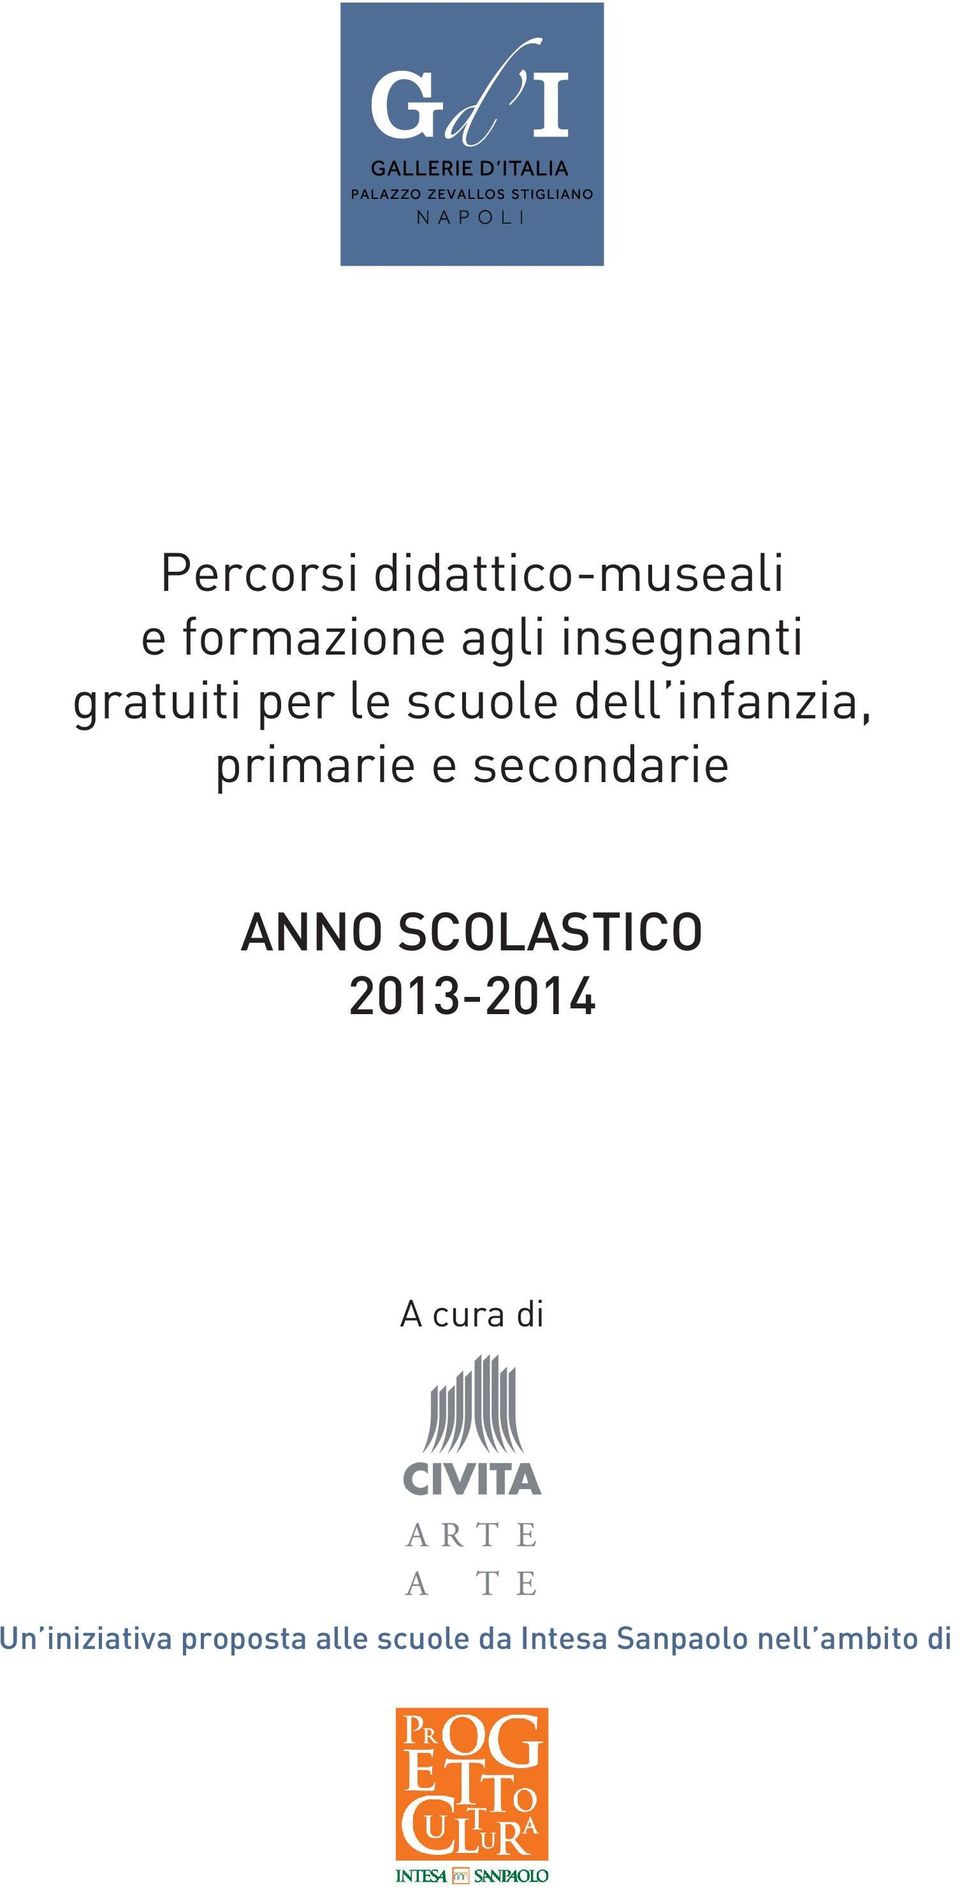 primarie e secondarie ANNO SCOLASTICO 2013-2014 A cura